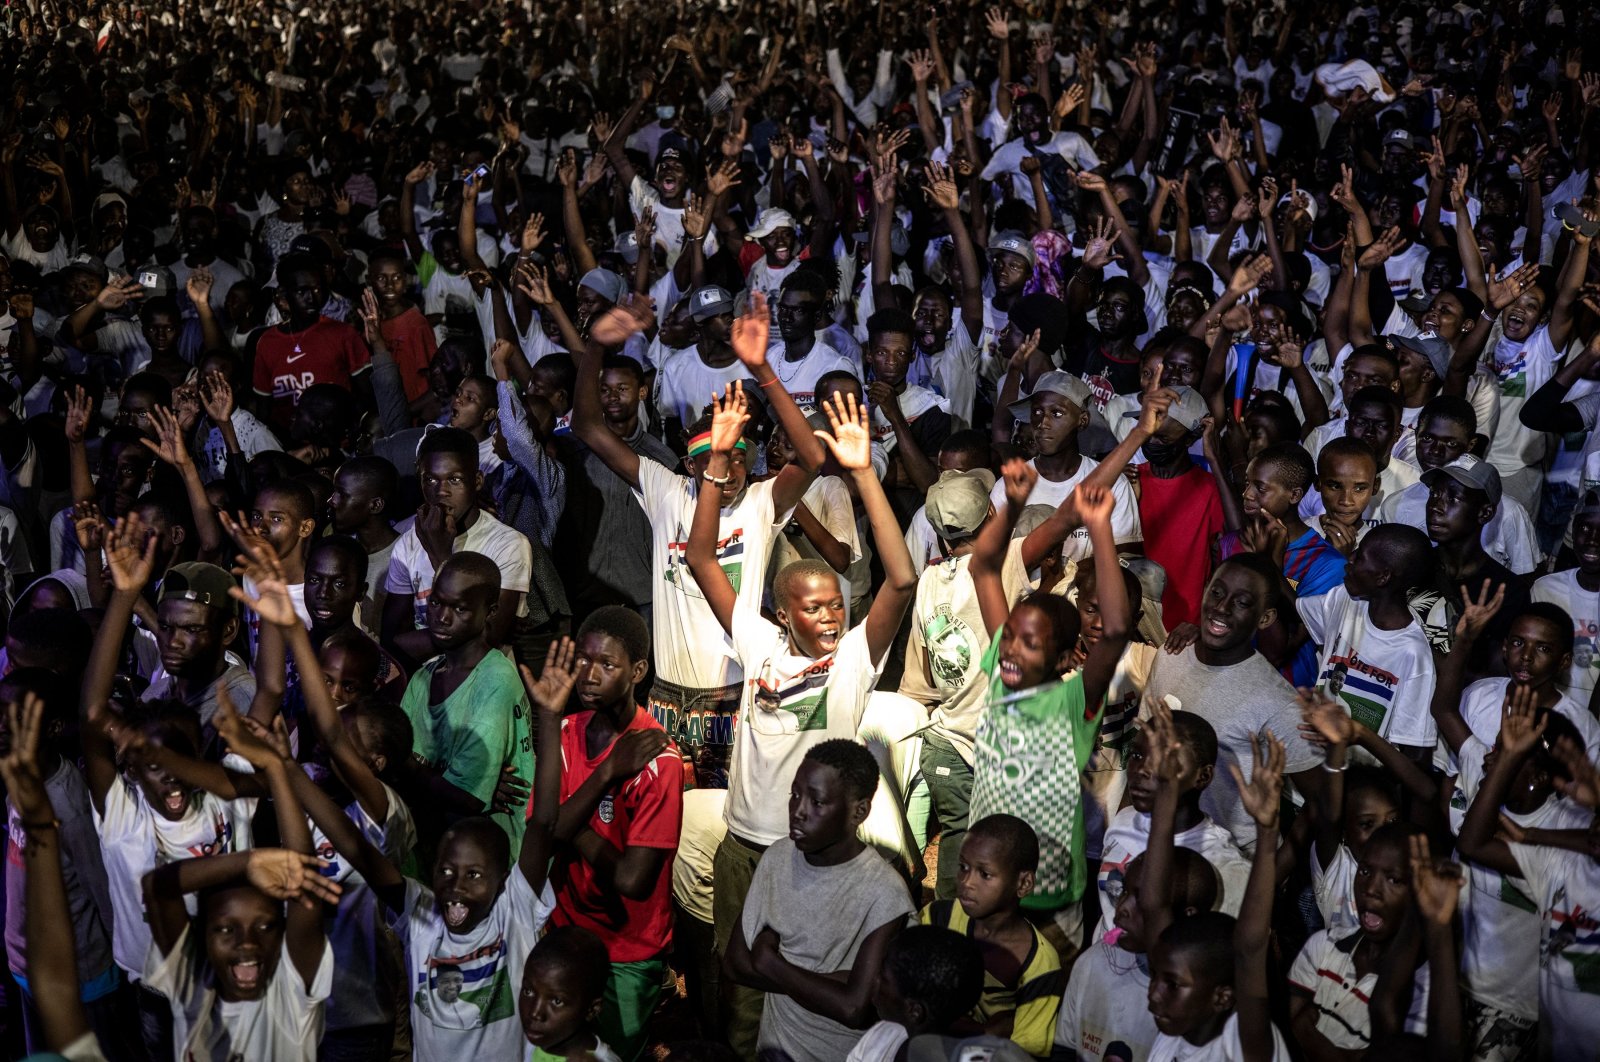 Pemilihan Gambia merupakan kemenangan bagi demokrasi, kata EU